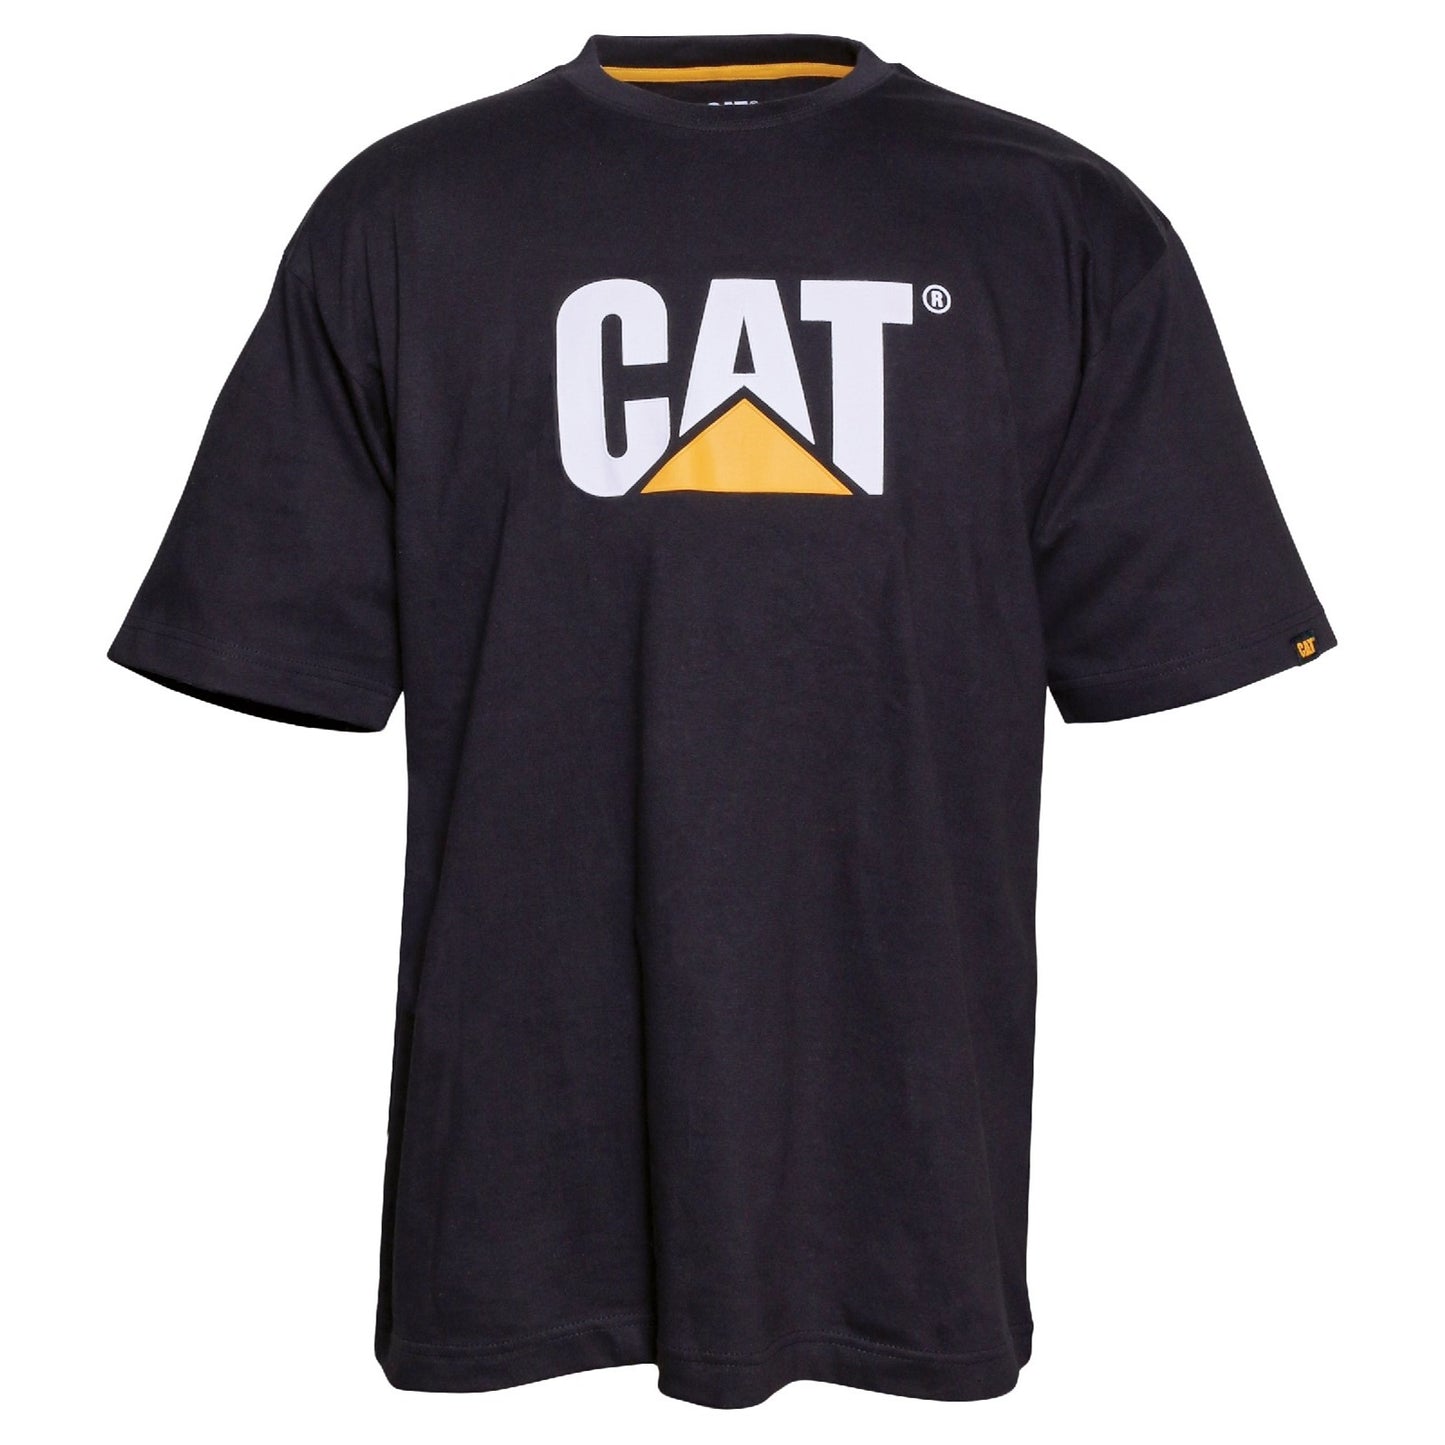 Trademark Logo T-Shirt, Caterpillar